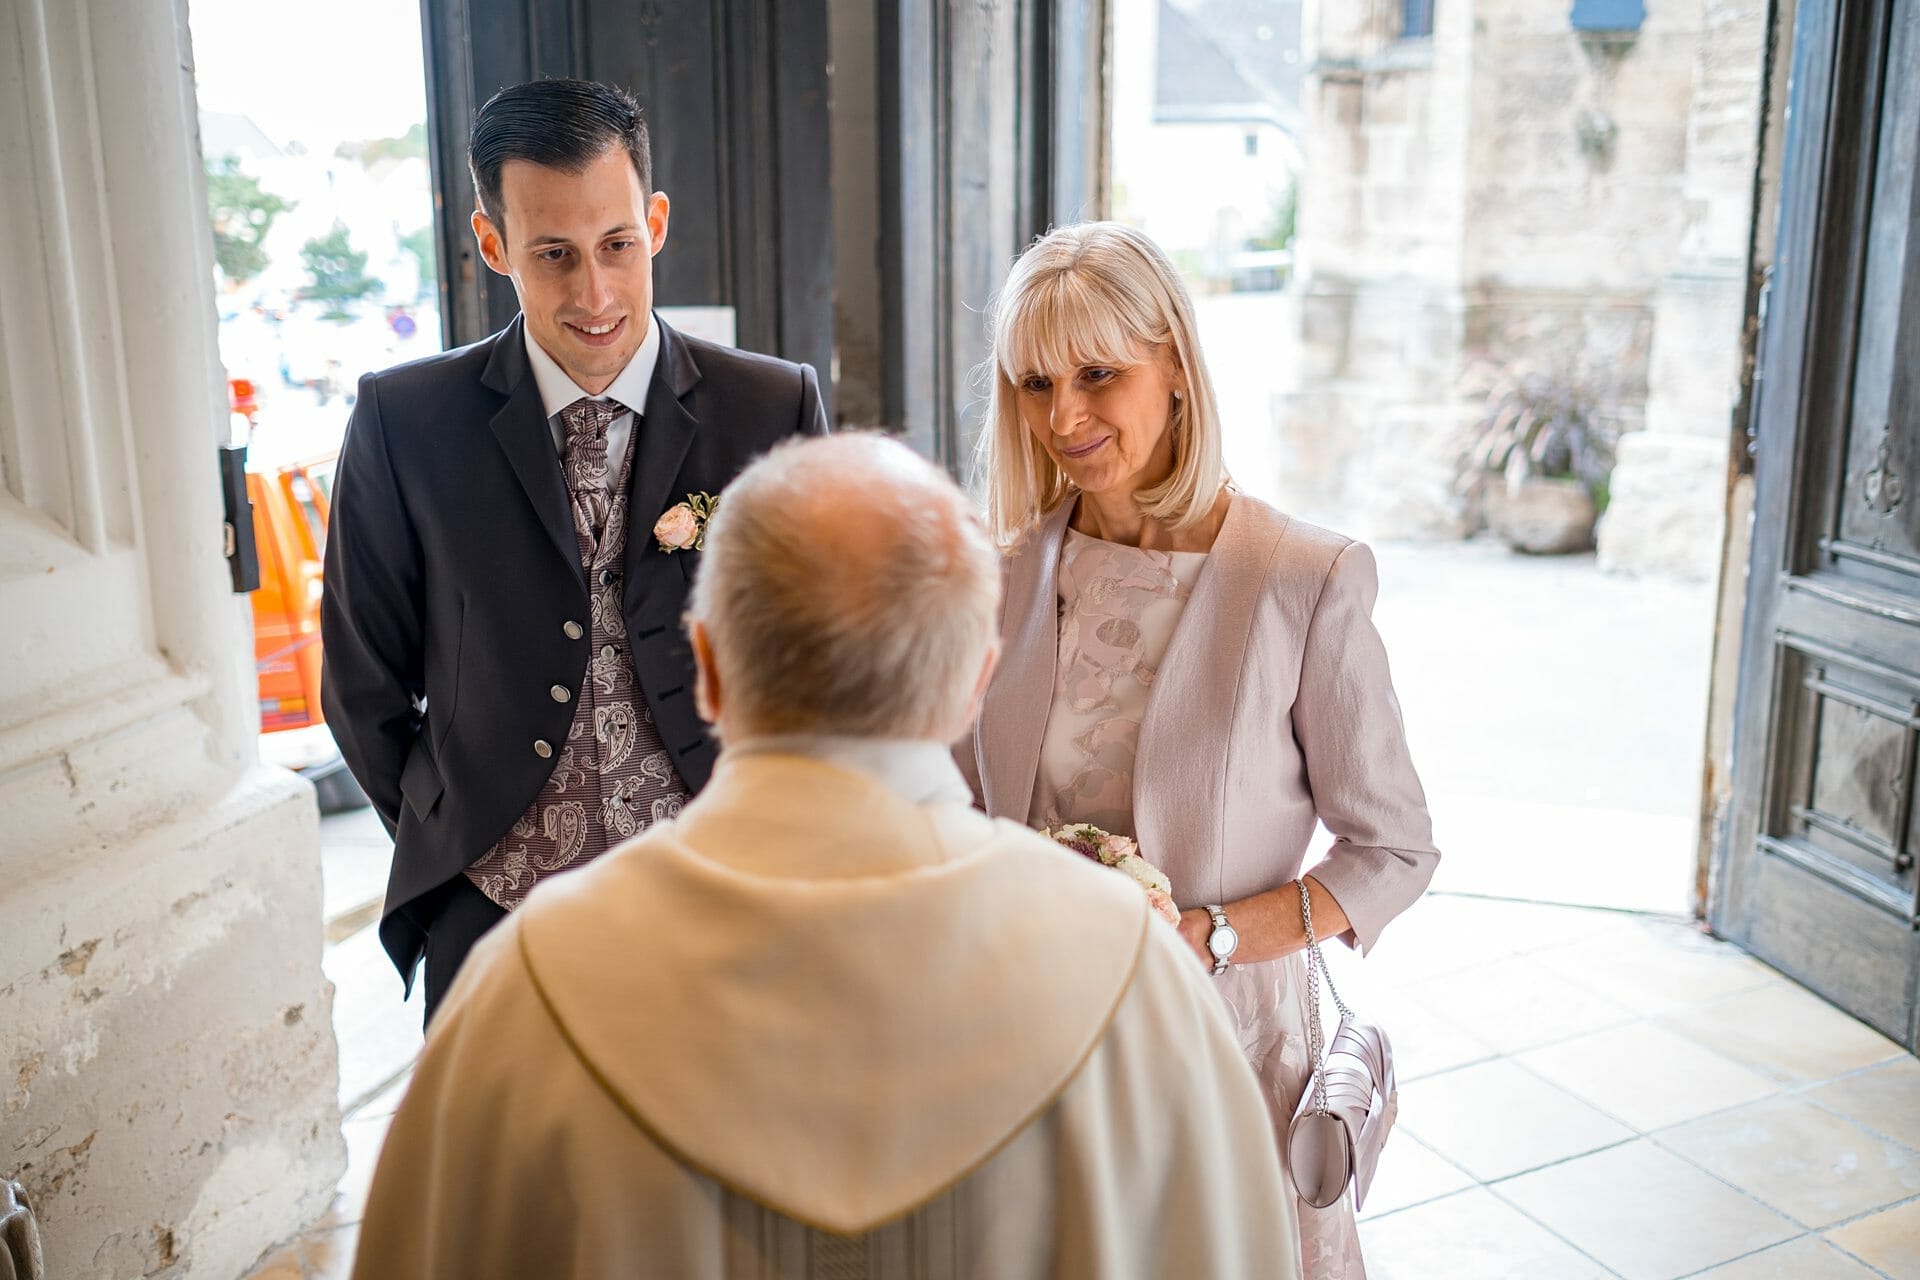 Ein Mann im Anzug und eine Frau im Kleid im Gespräch mit einem Priester.